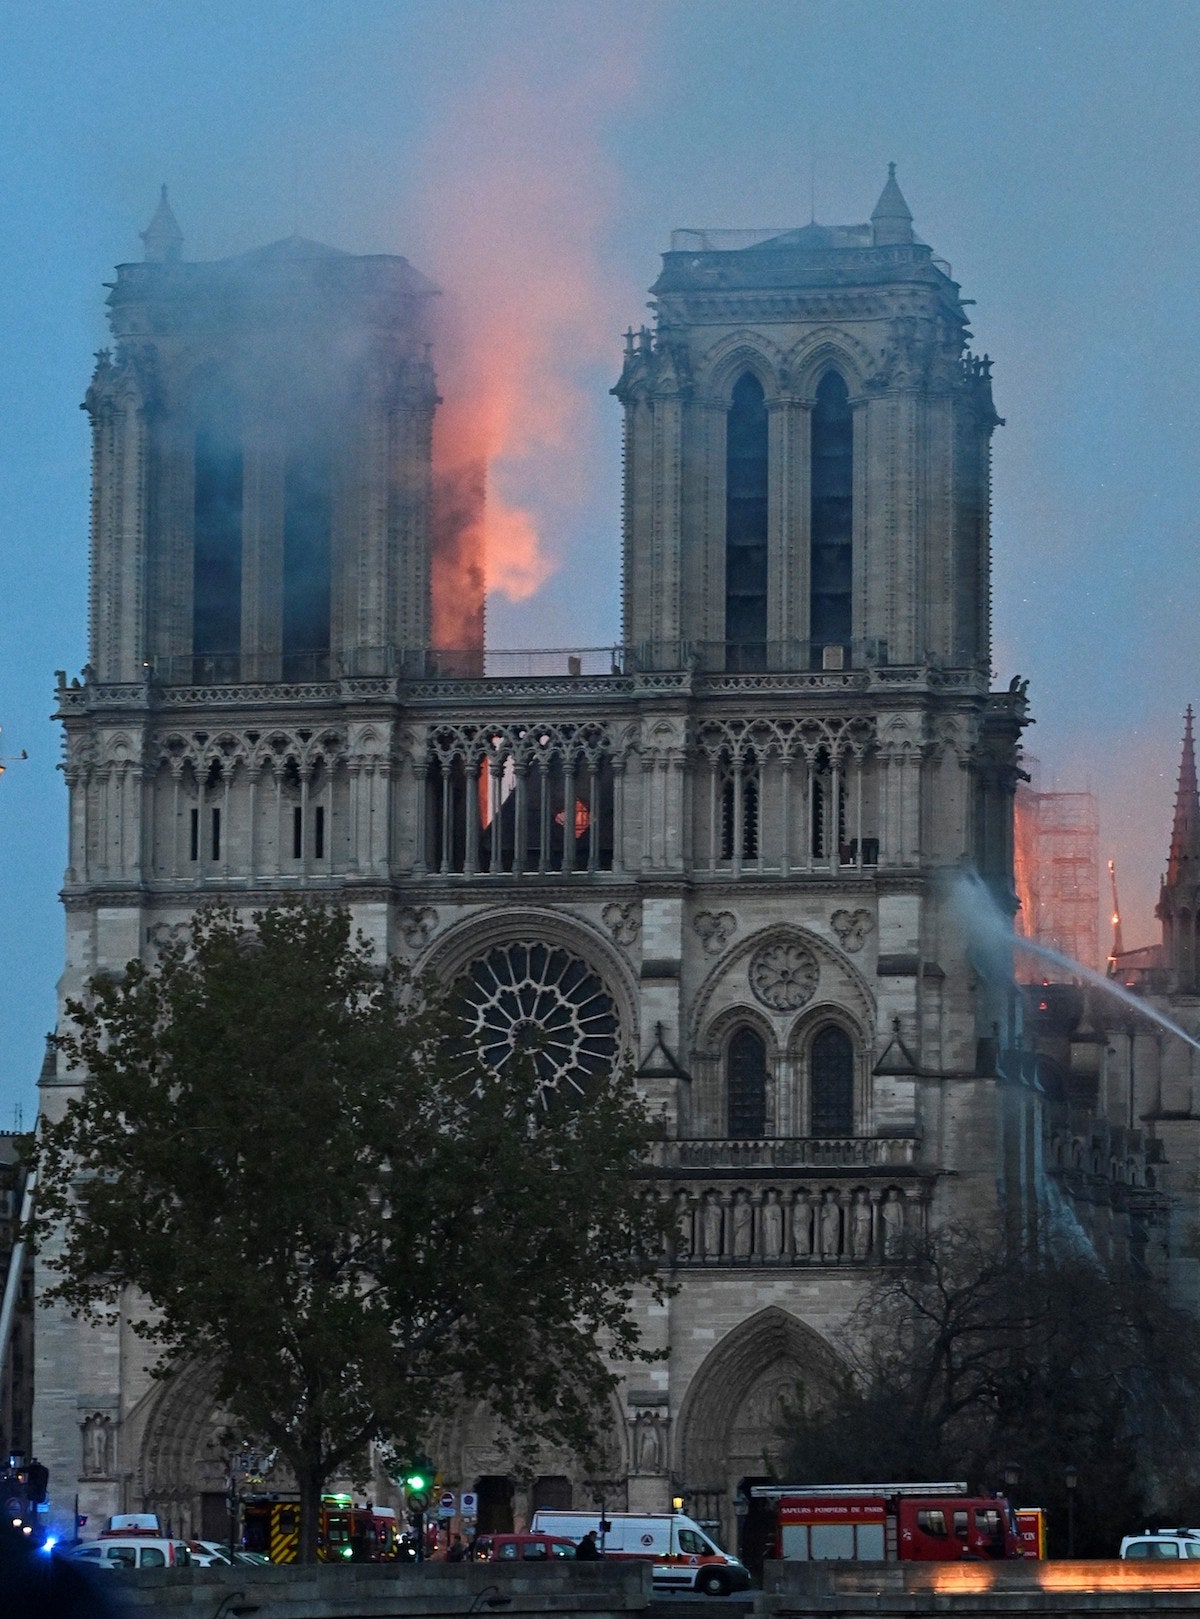 Собор Парижской Богоматери после пожара будет восстановлен подробности